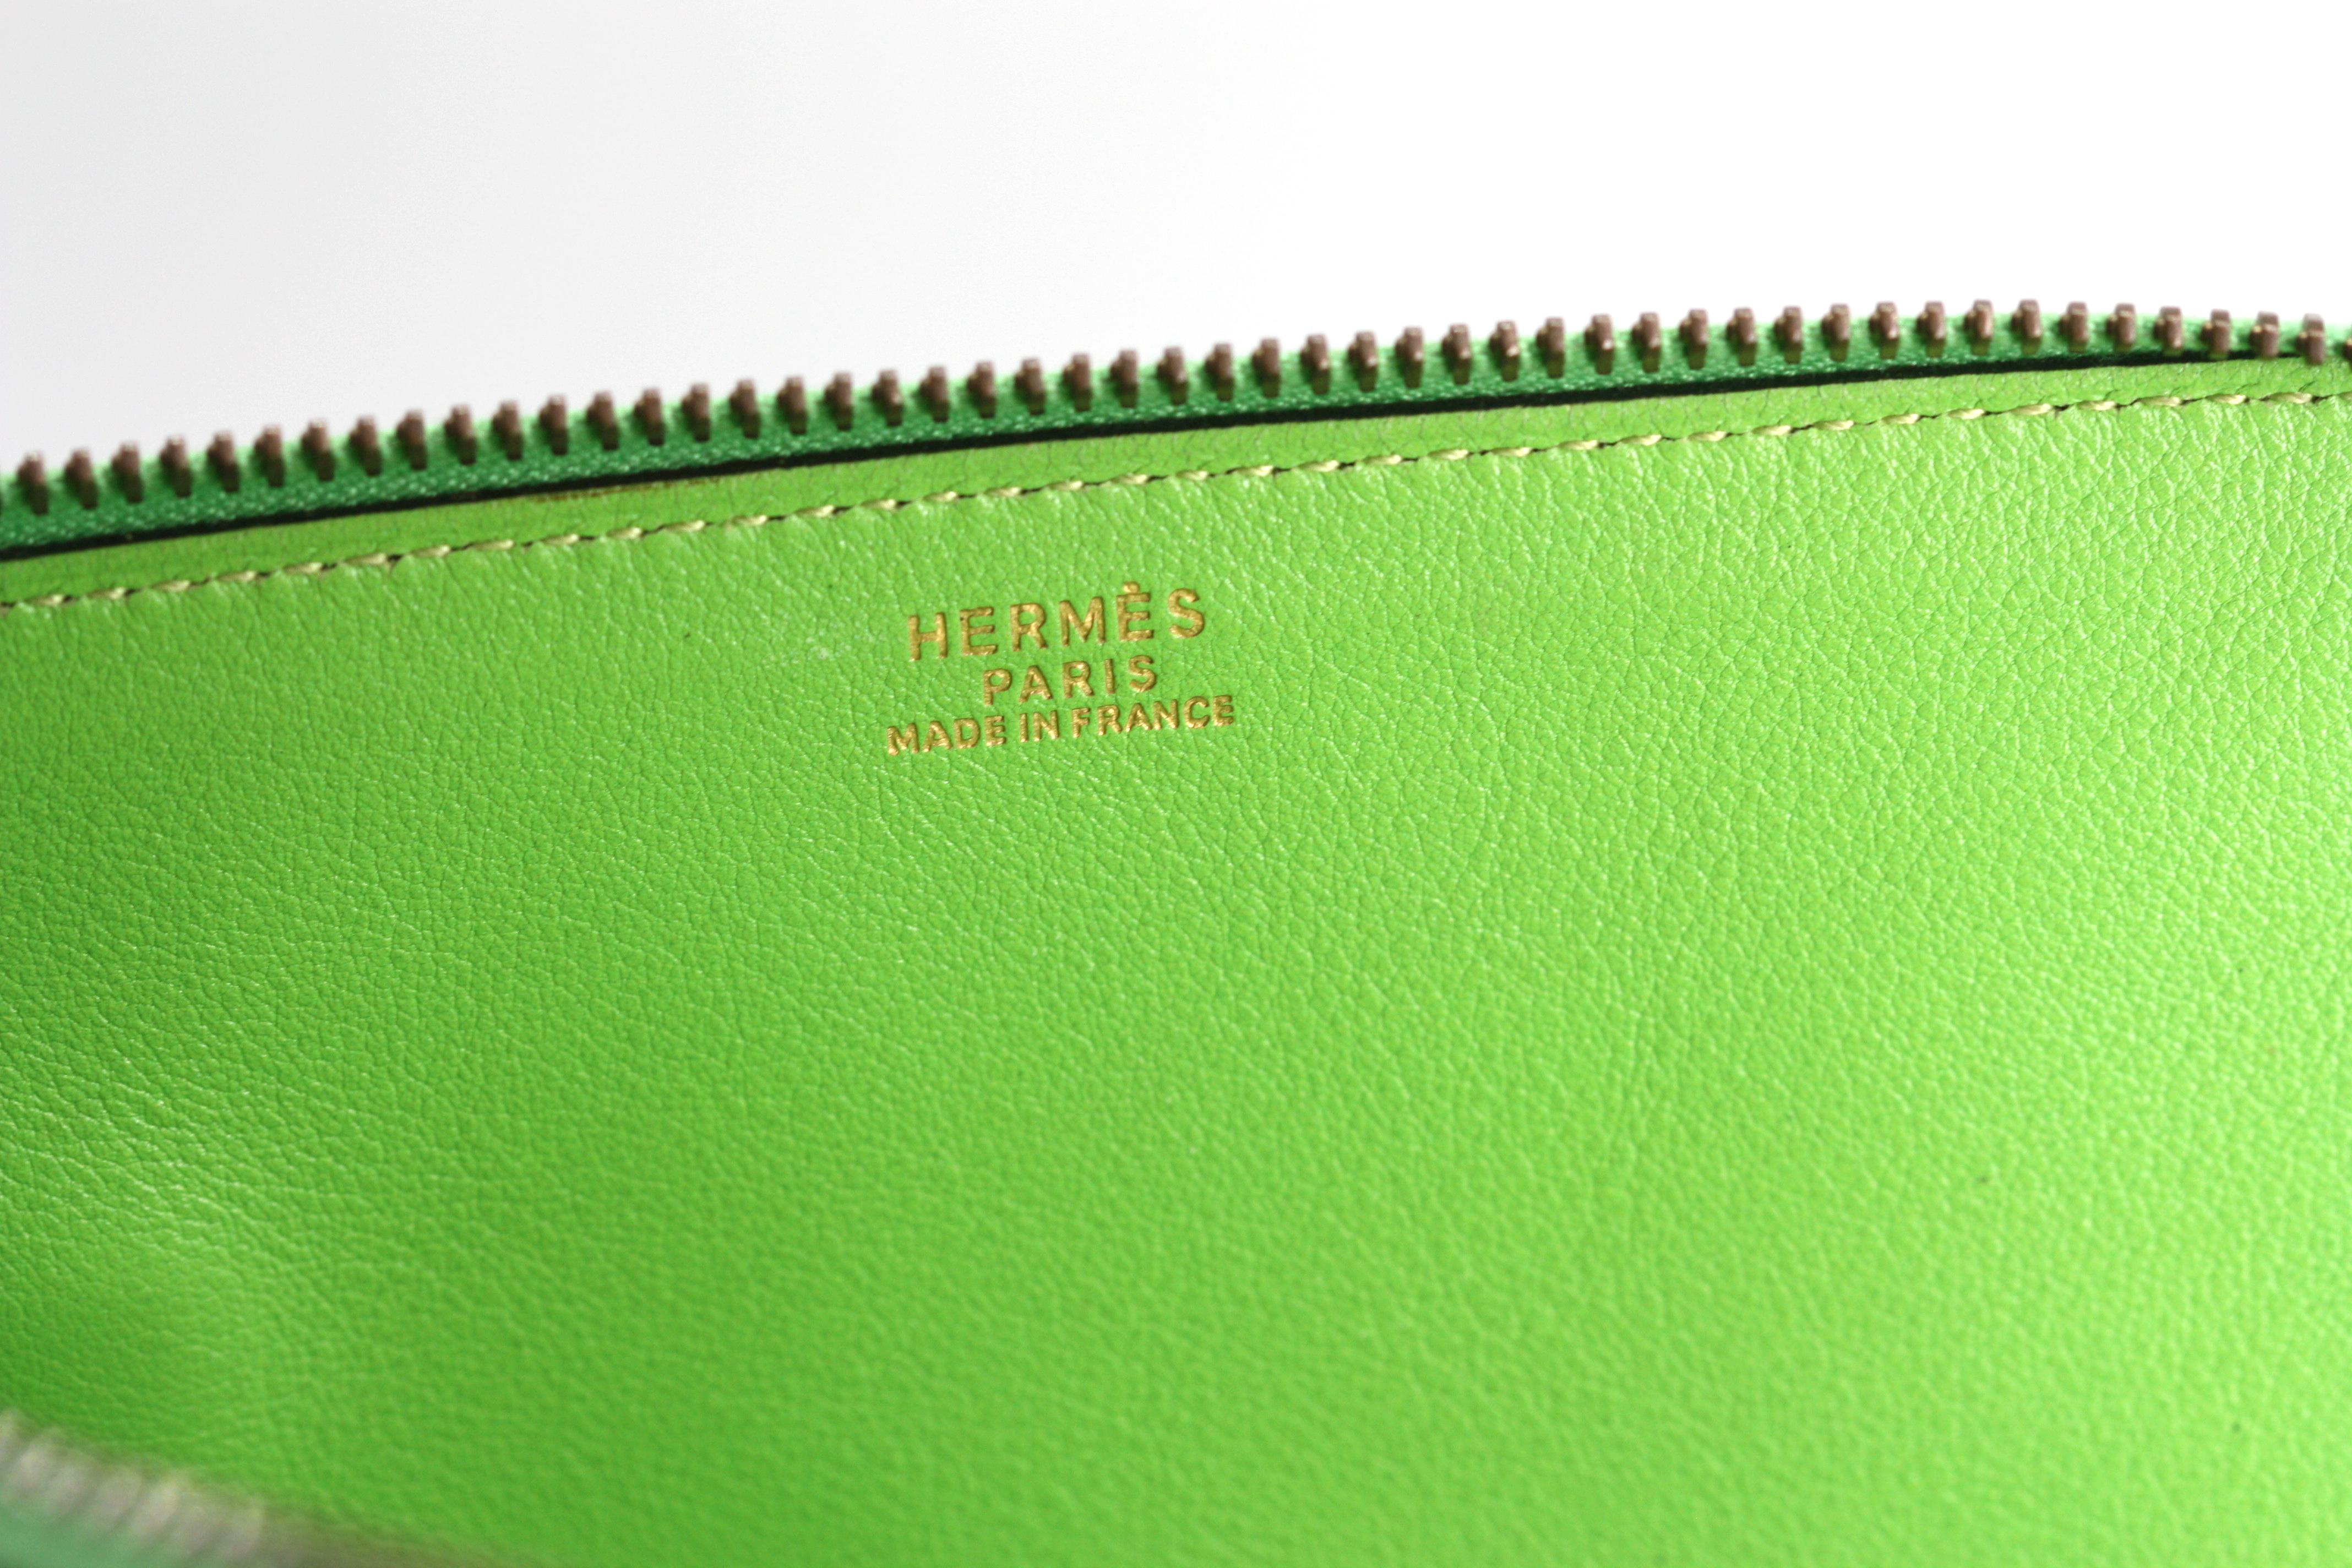 Hermes Kiwi Green Calfs Leather Shoulder Bag For Sale 1